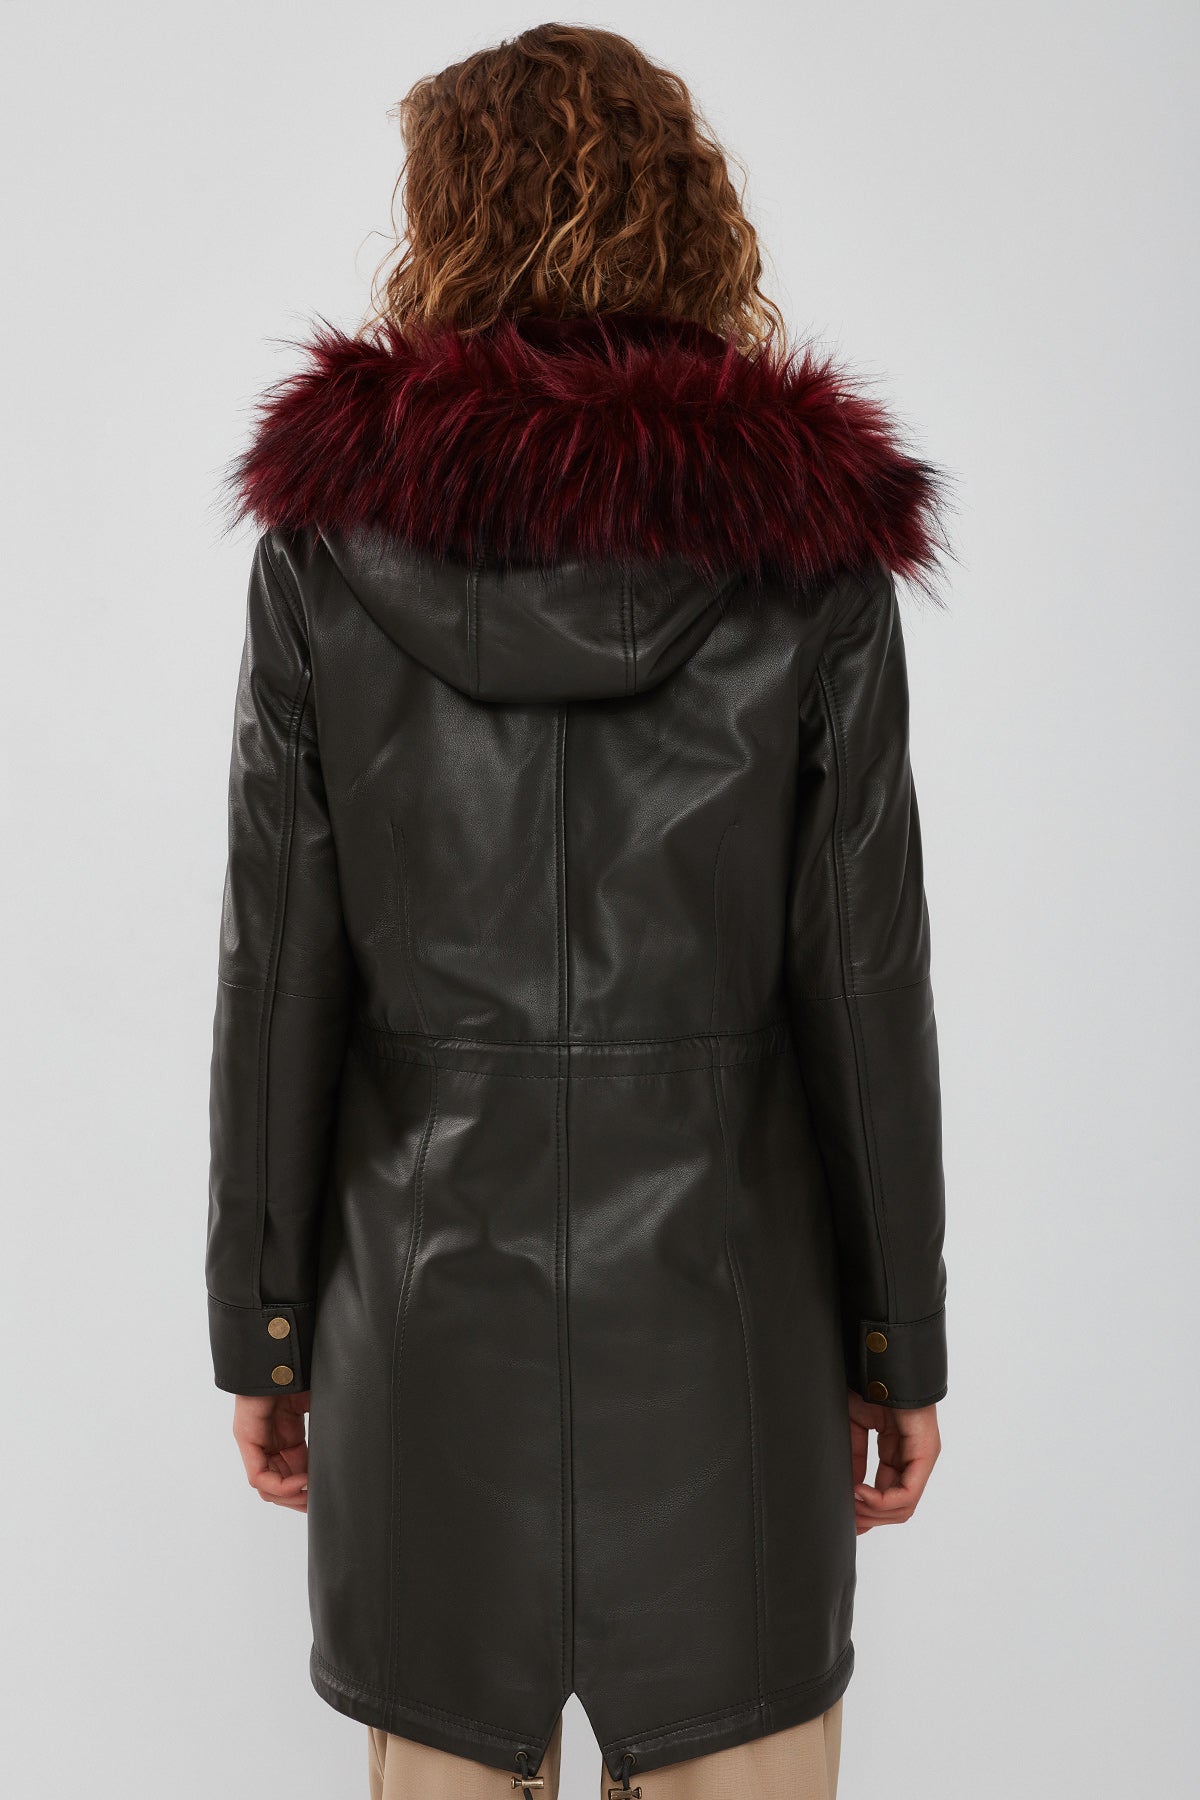 Celine Women's Green Hooded Fur Leather Coat